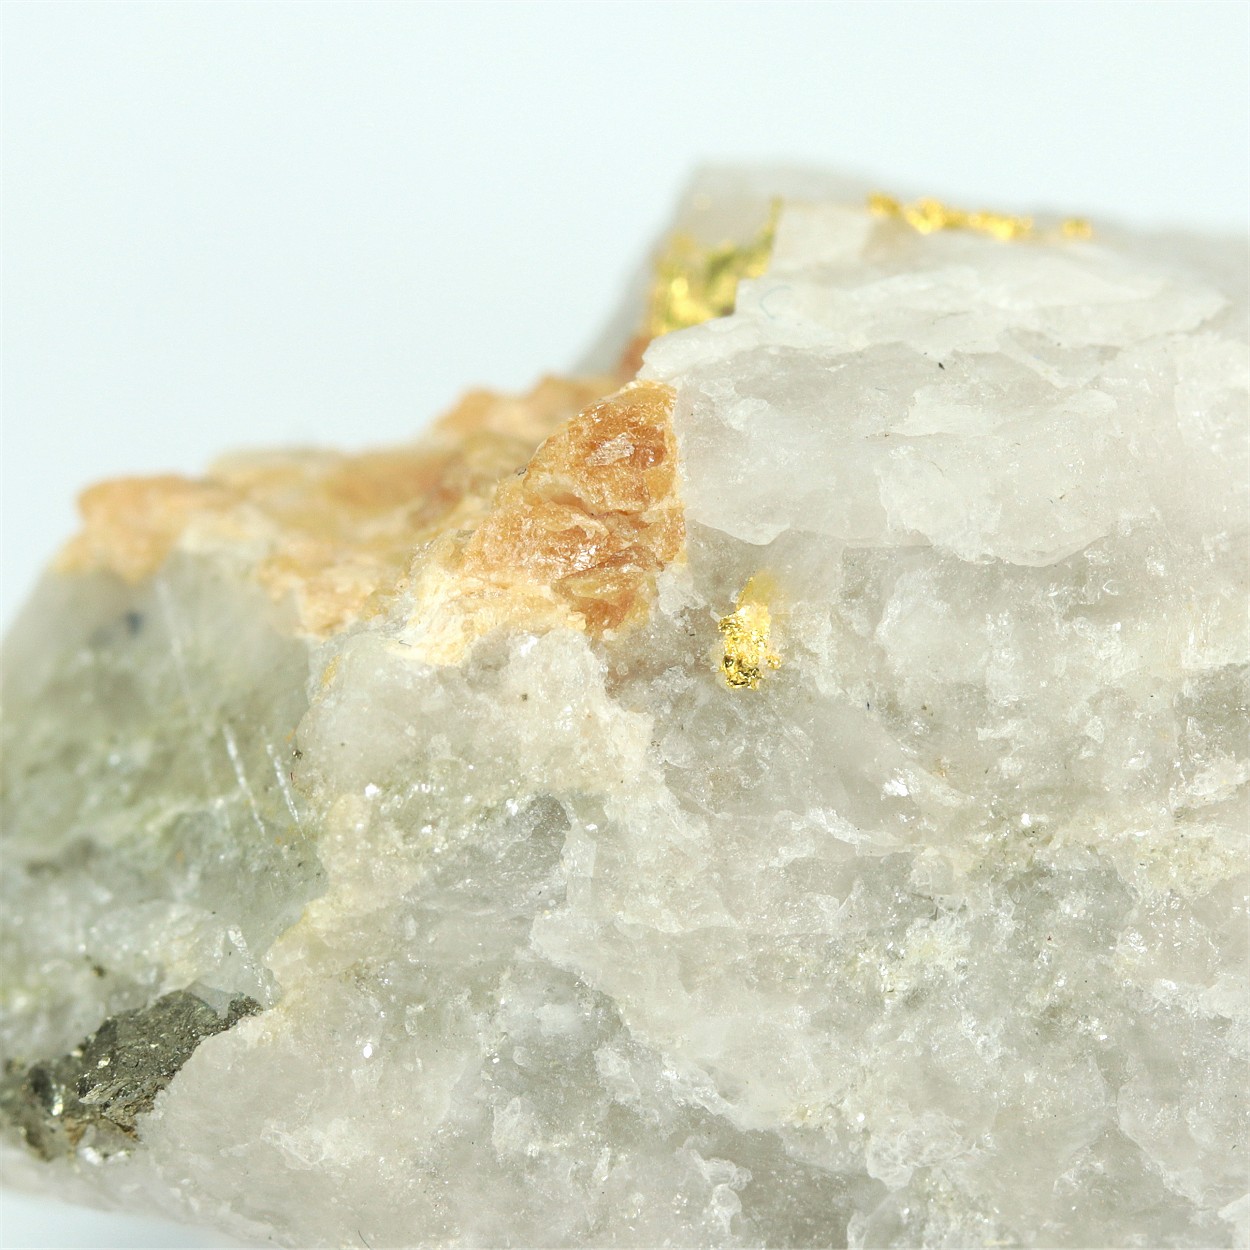 Gold With Scheelite & Pyrite